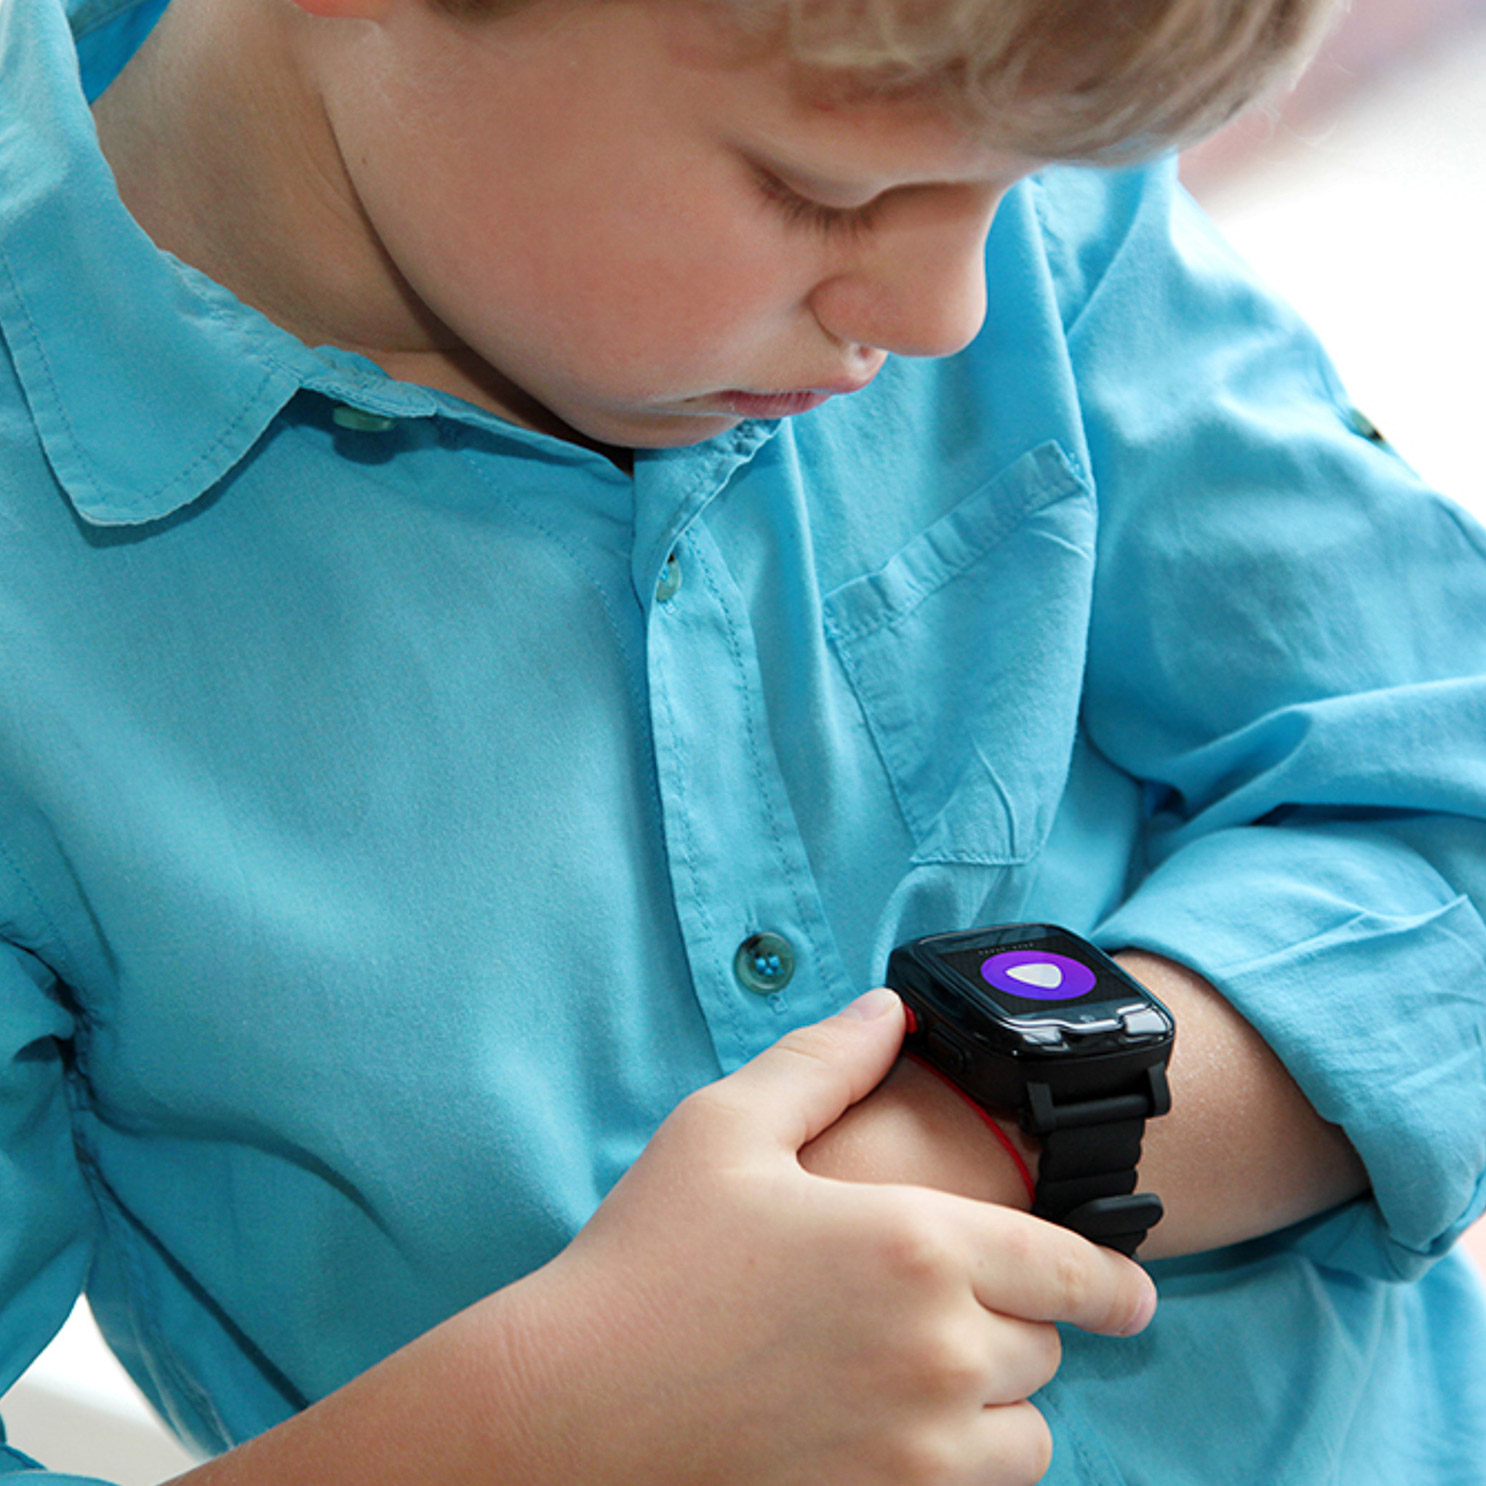 фото Детские умные часы elari kidphone 3g черные